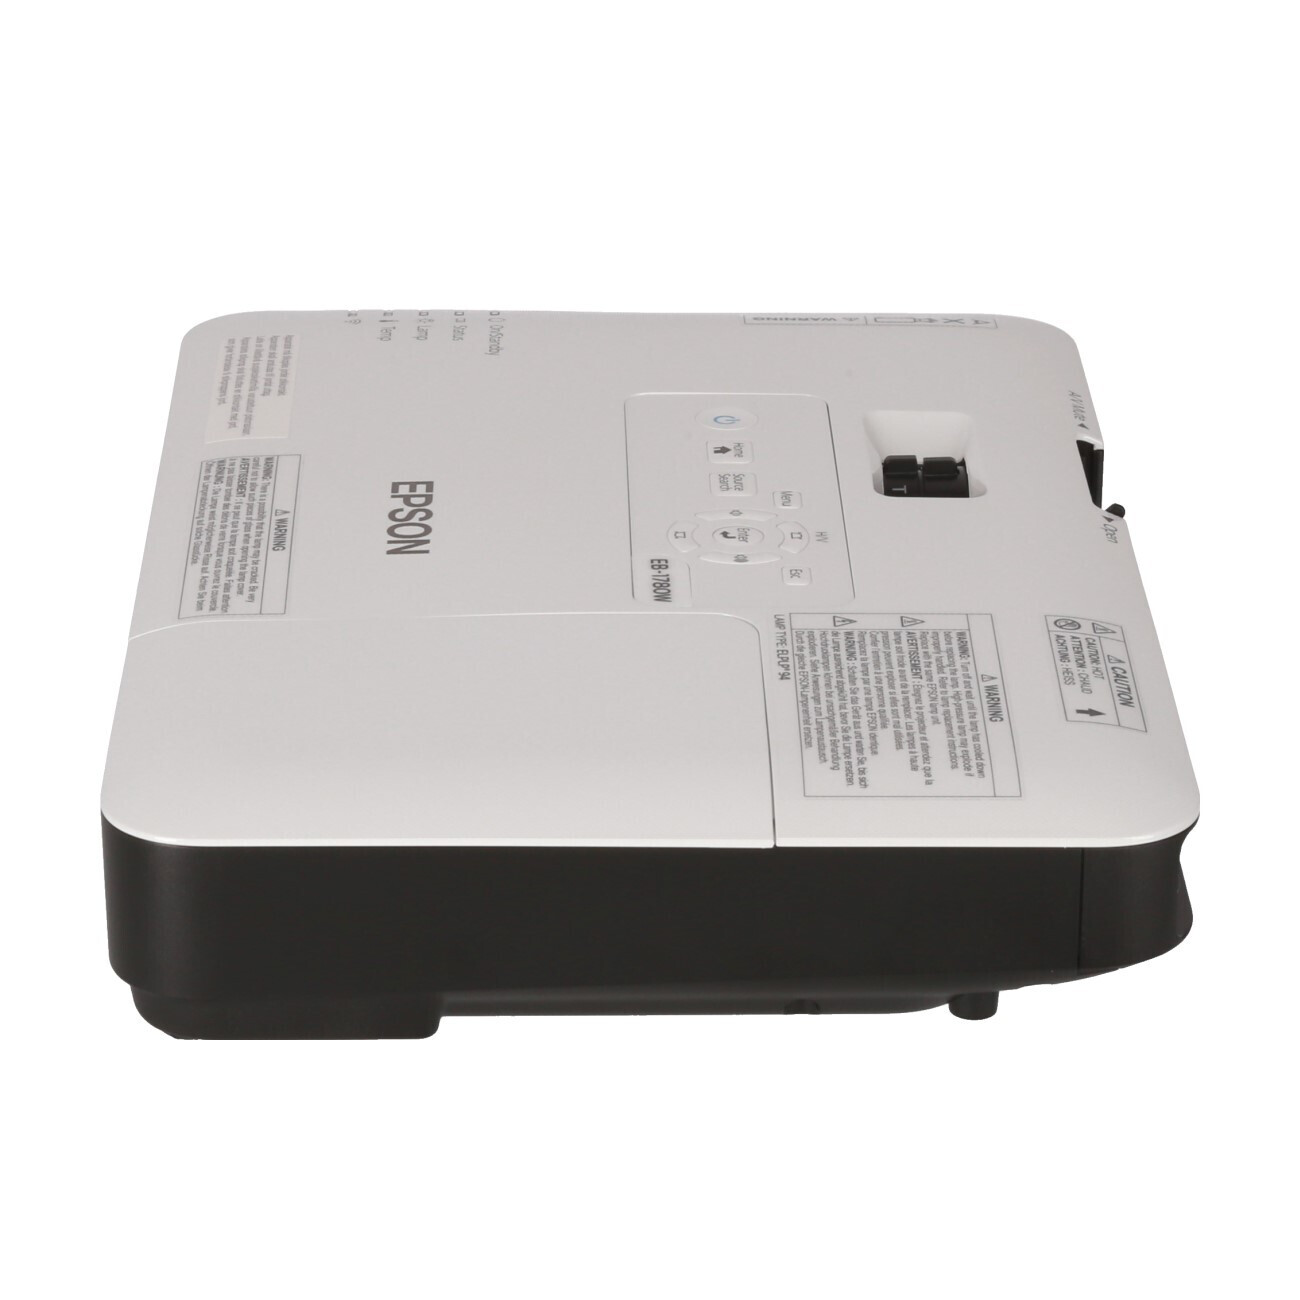 Vorschau: Epson EB-1780W Mobiler Beamer mit 3000 ANSI-Lumen und WXGA Auflösung